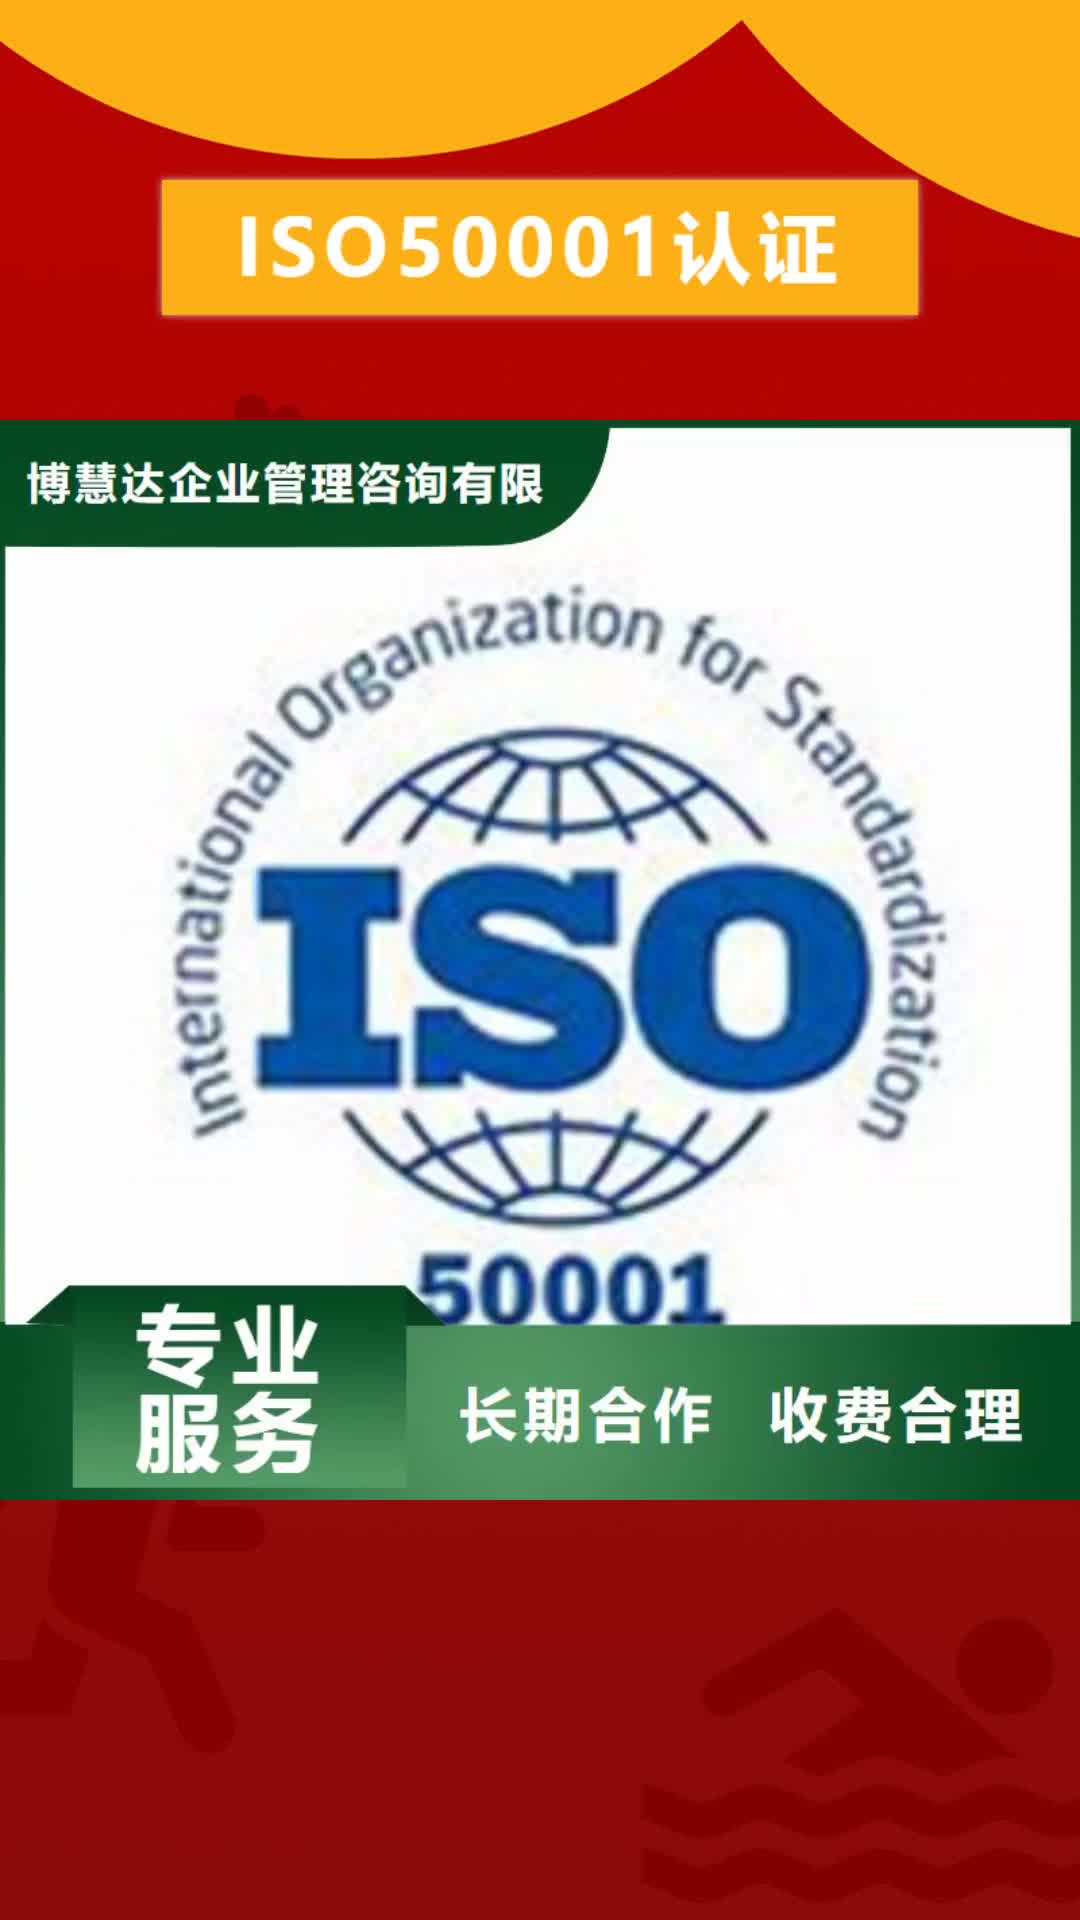 【邵阳 ISO50001认证 知识产权认证/GB29490品质优】